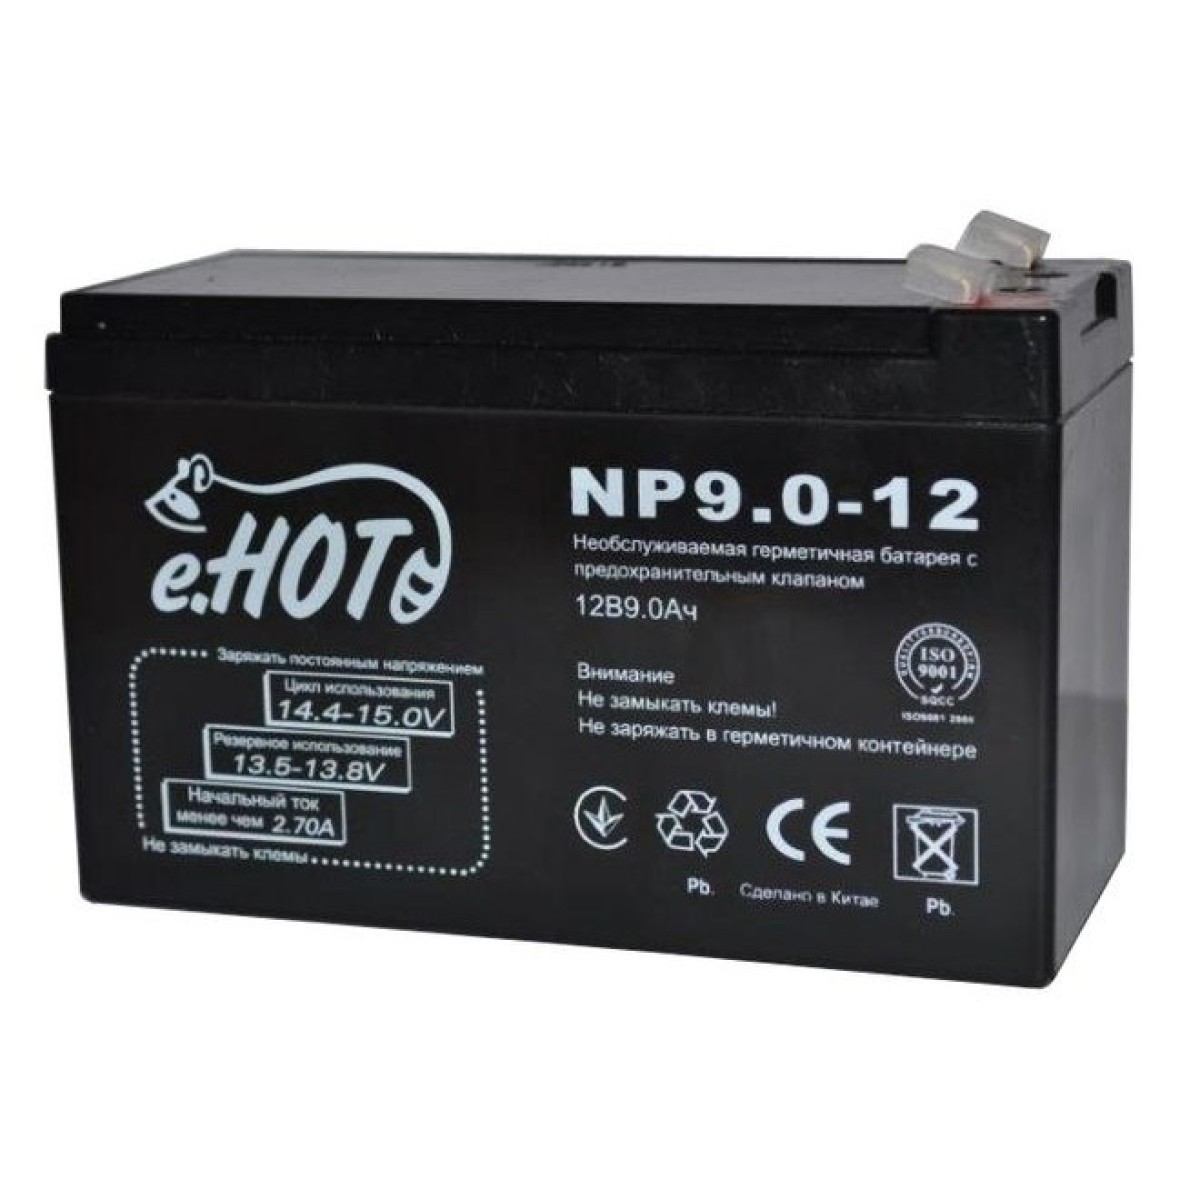 Аккумуляторная батарея Enot NP9.0-12 12V 9Ah (EnotNP9.0-12) 256_256.jpg